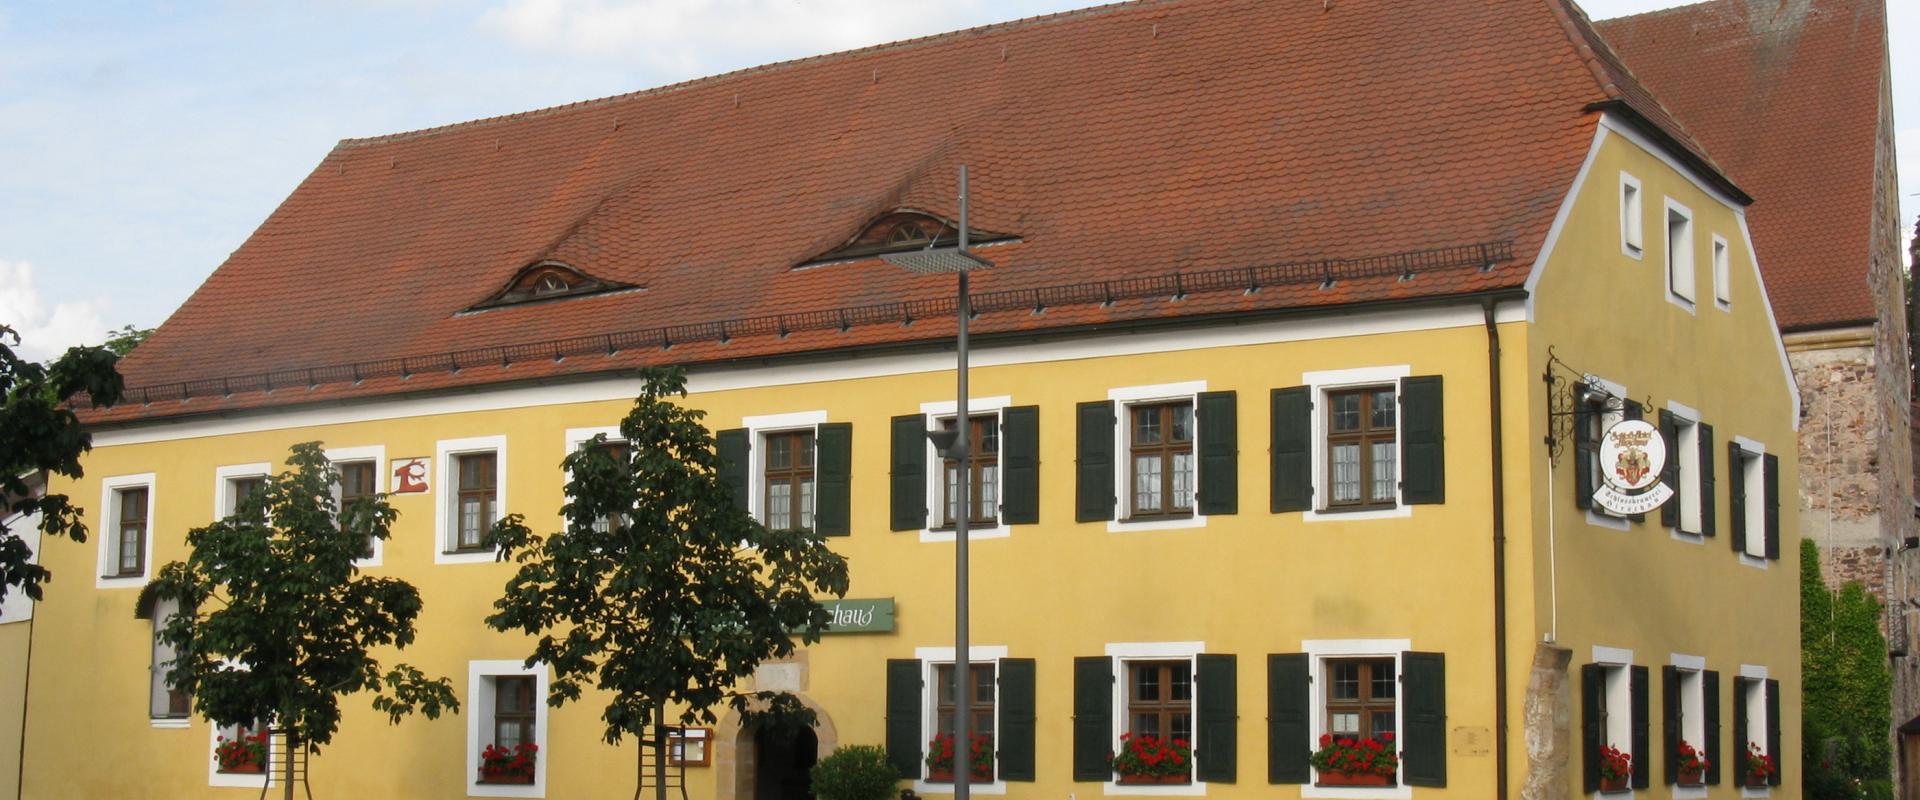 15106 Hotel Schloss Hirschau-Ansicht.jpg